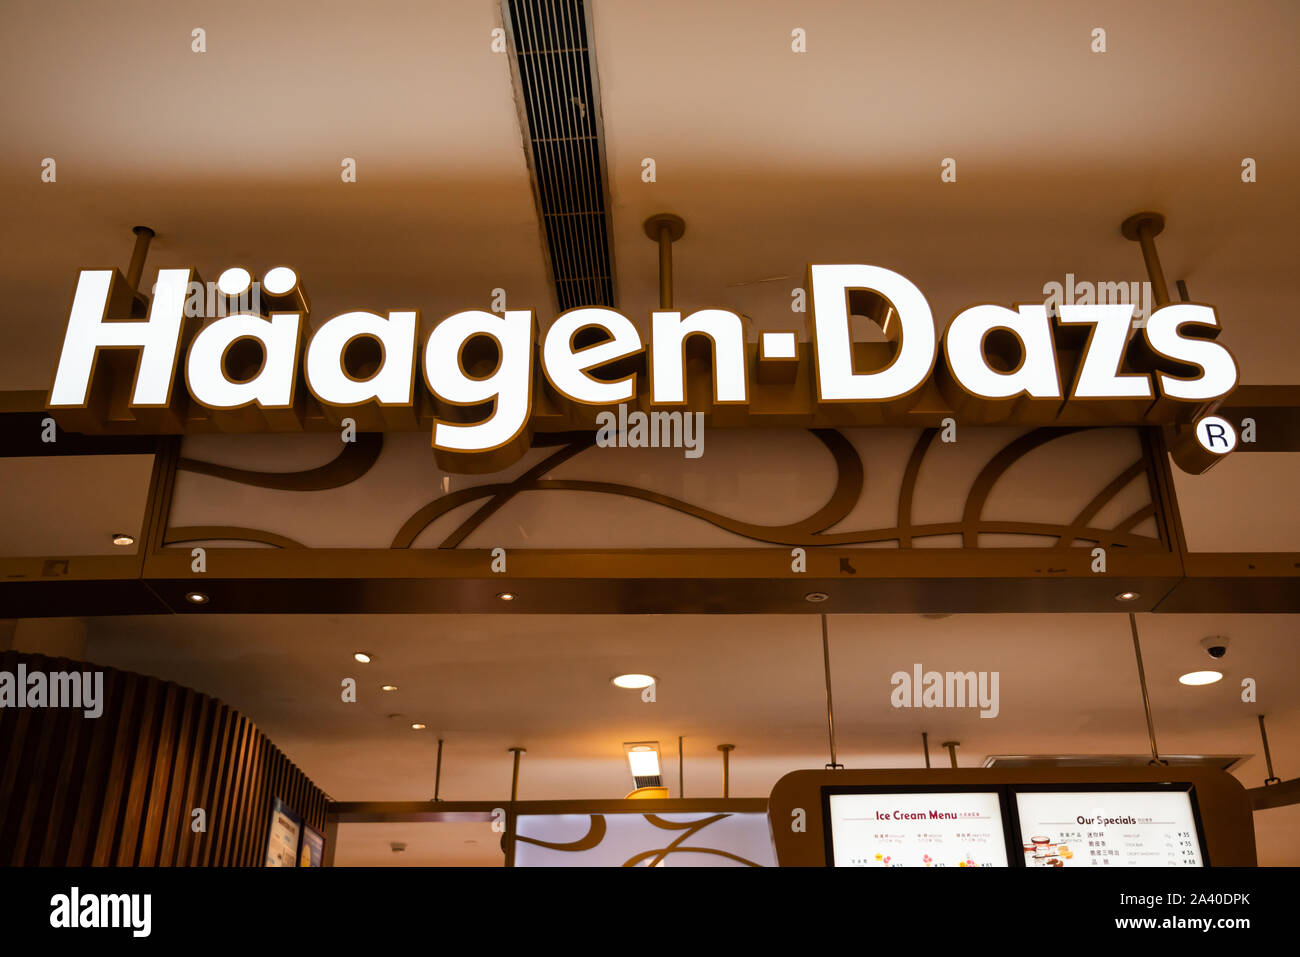 Marque de crème glacée américaine logo Haagen-Dazs vu à Shenzhen. Banque D'Images